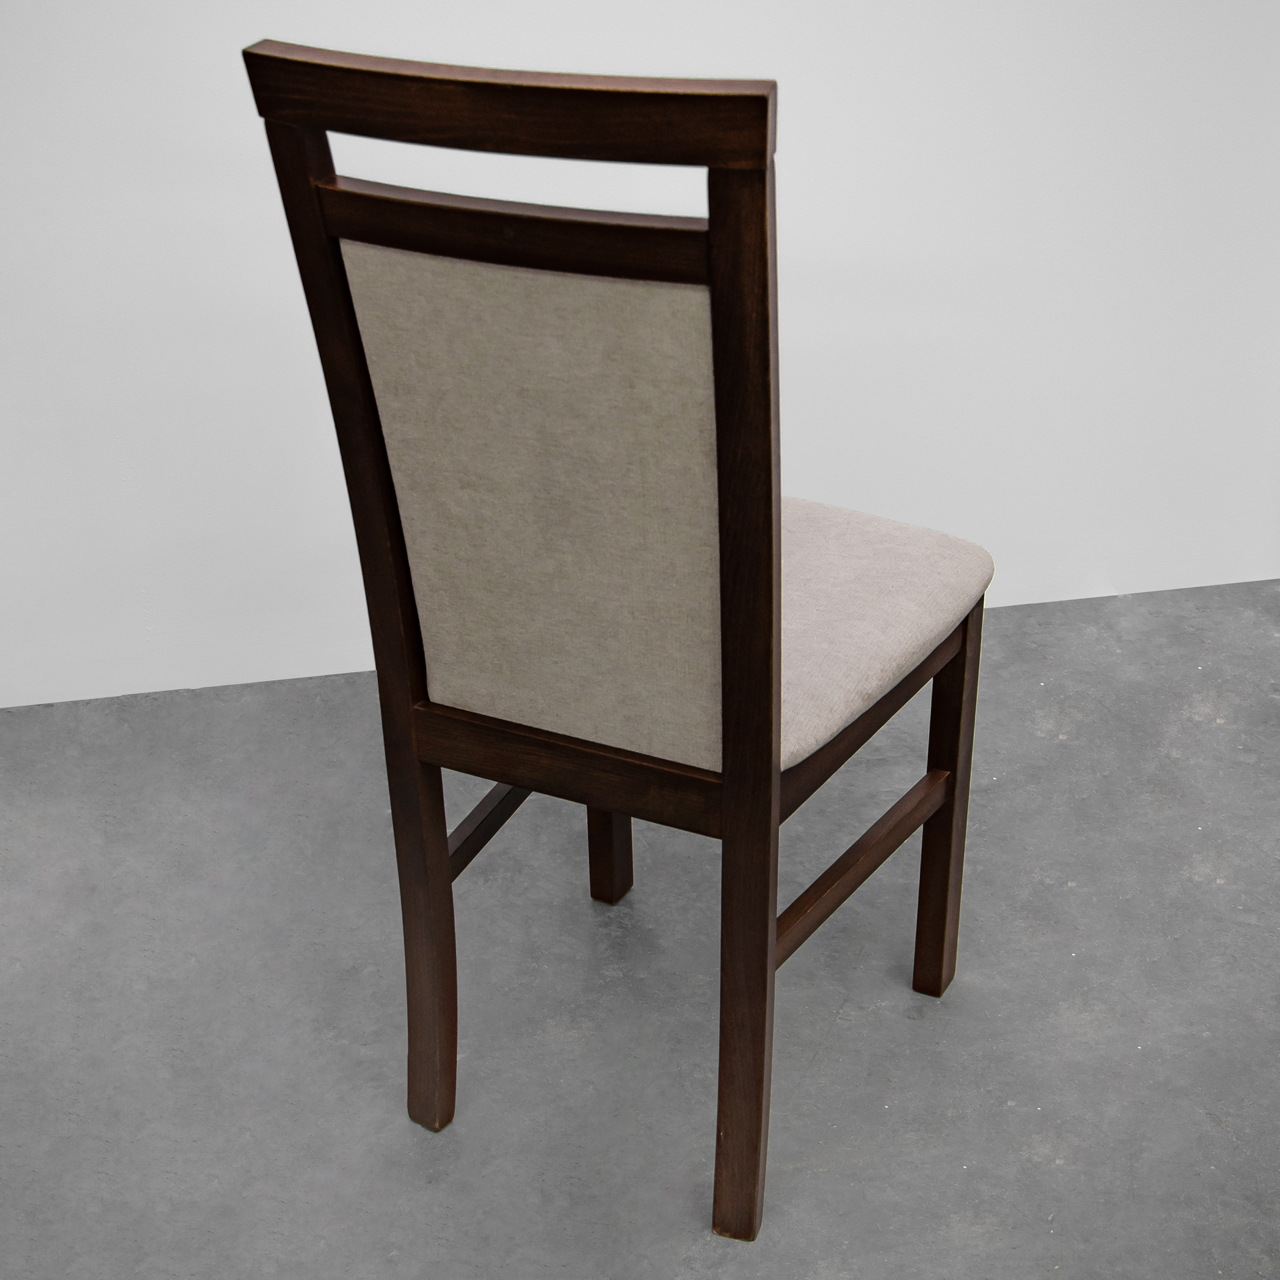 Tanie tapicerowane krzesło DK25 orzech (3x) WYPRZEDAŻ